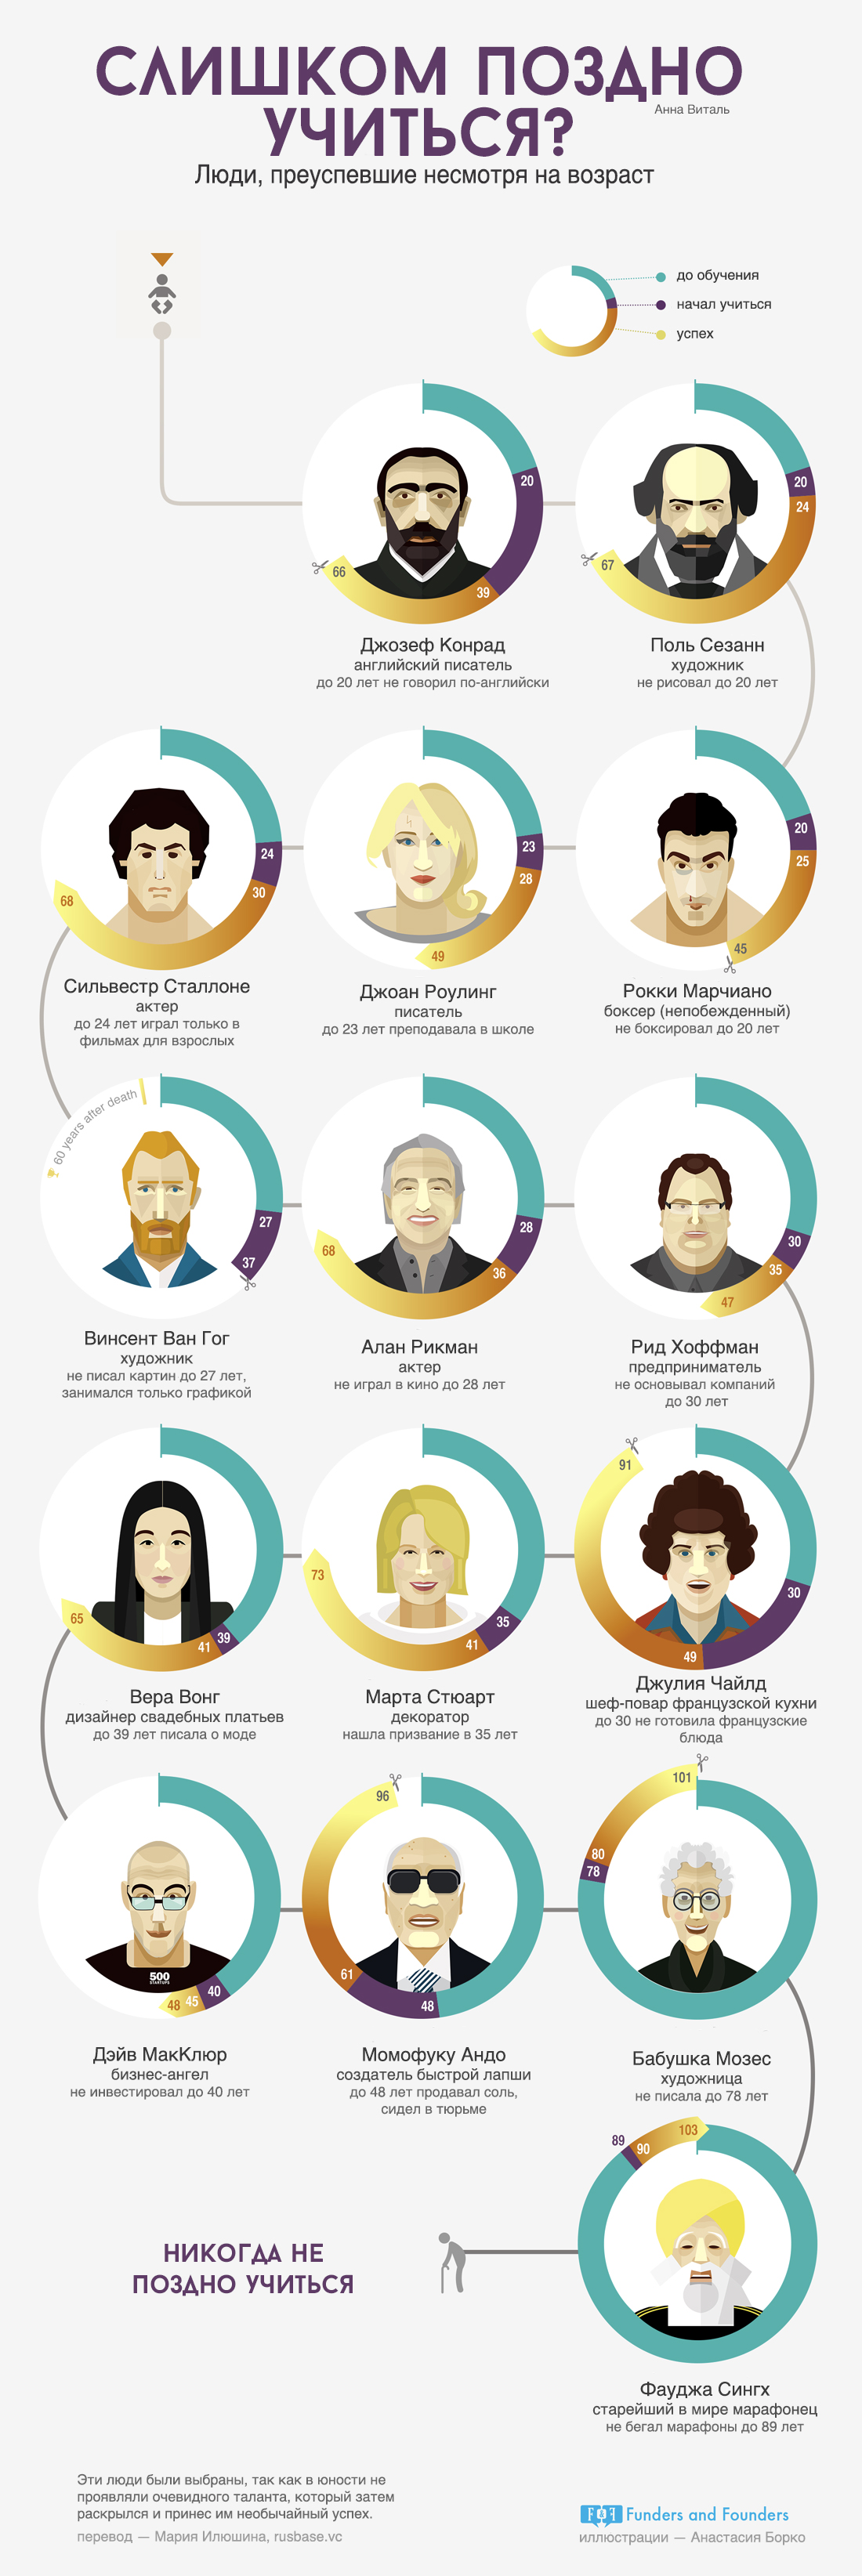 Люди преуспевшие несморя на возраст - инфографика